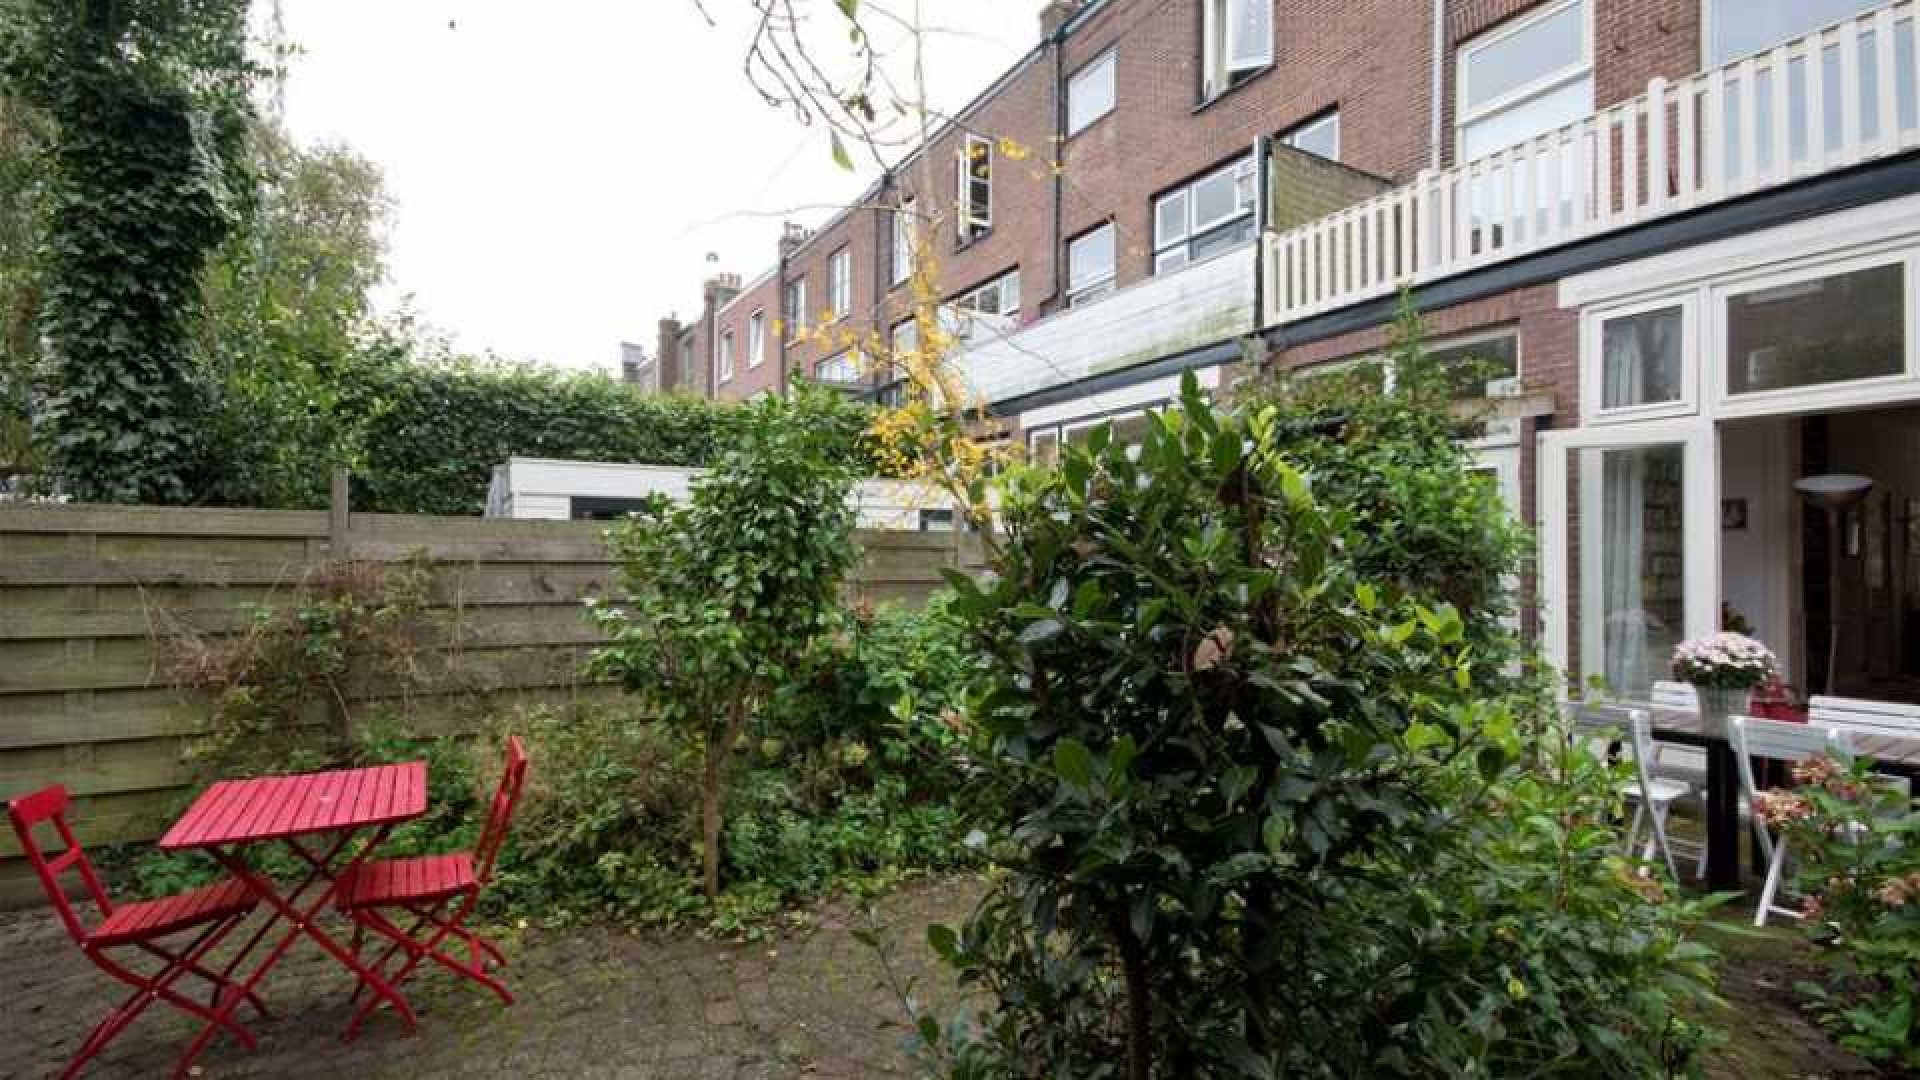 Familie haalt huis Joost Zwagerman uit de verkoop. Zie foto's